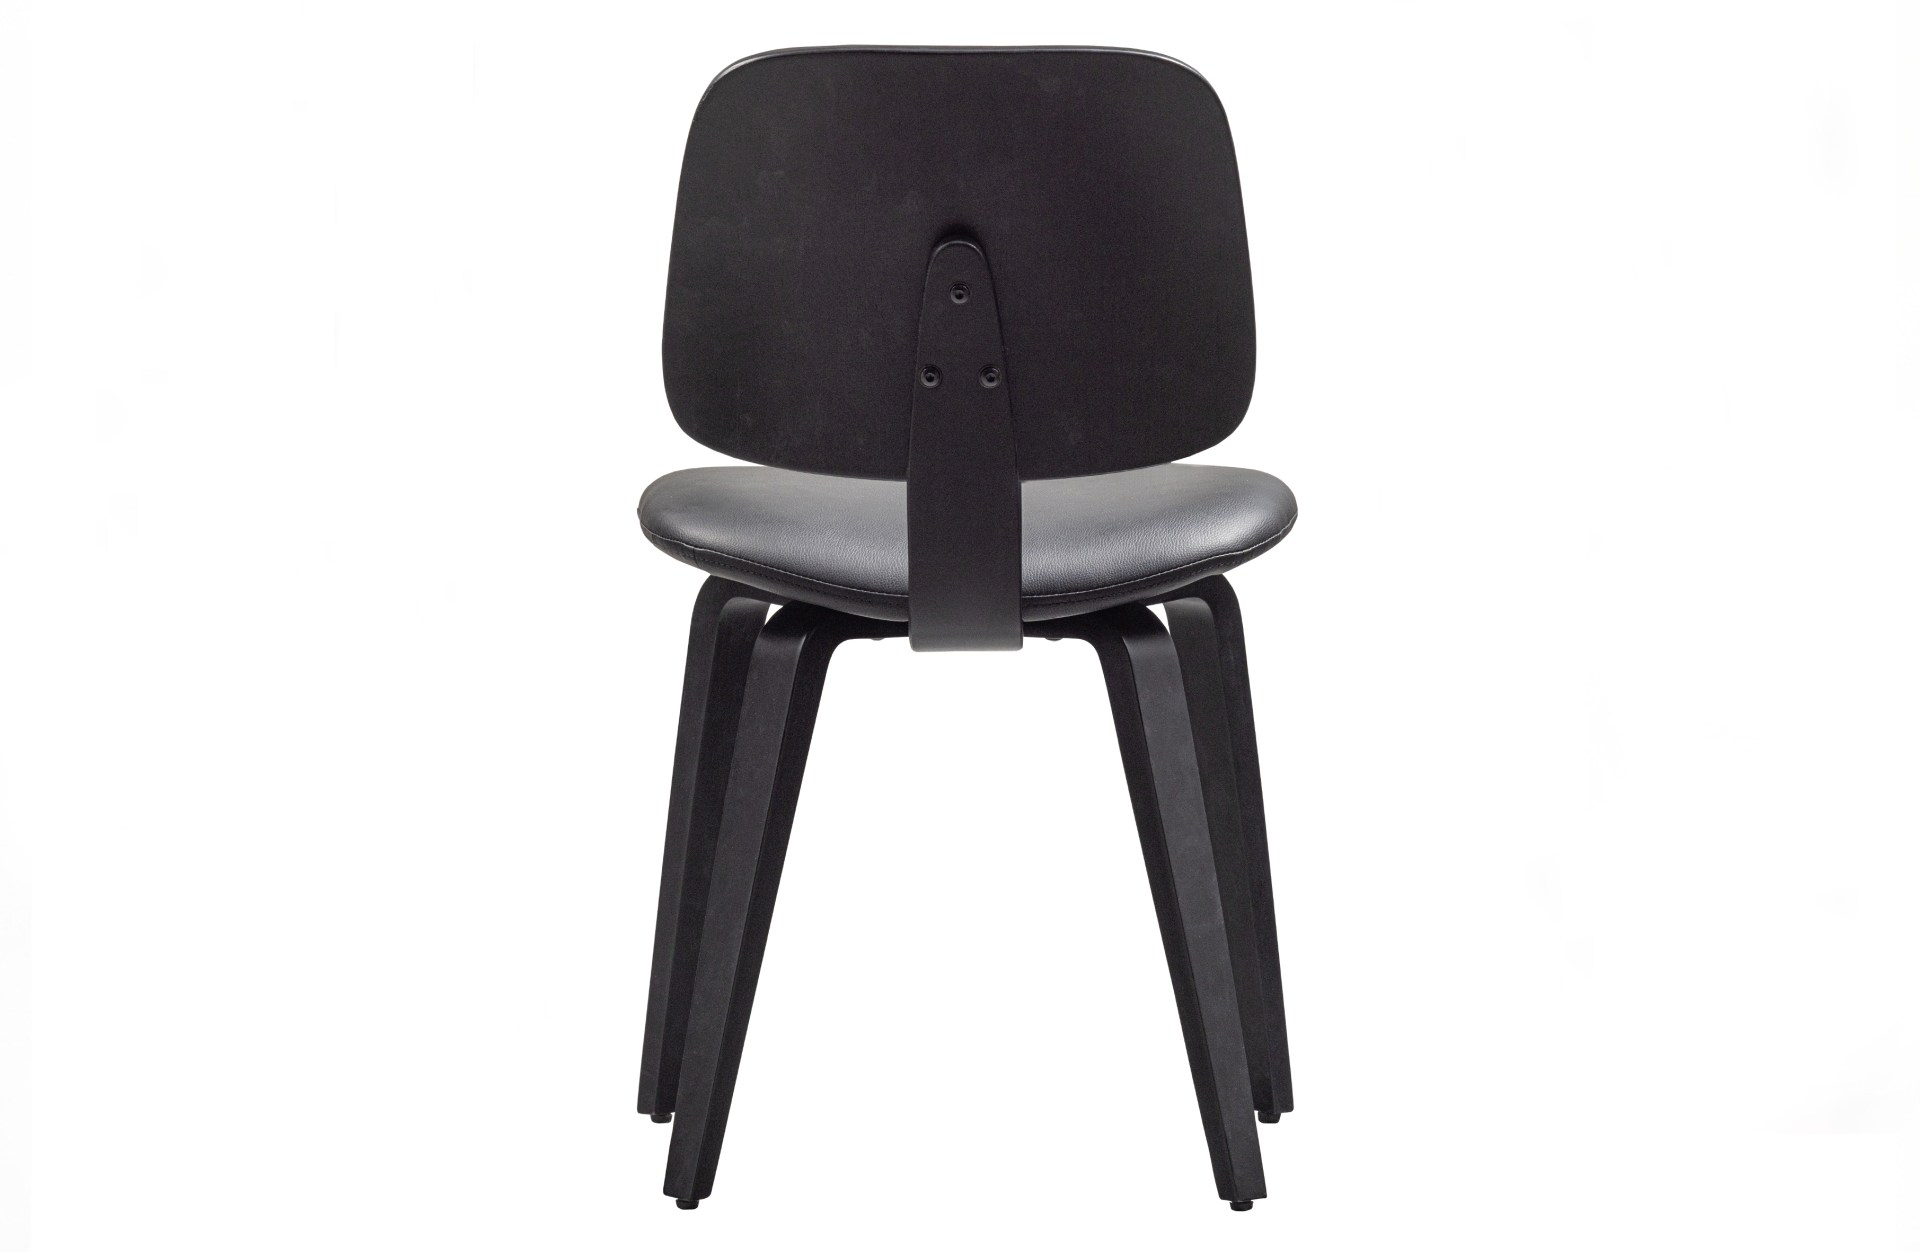 Der Esszimmerstuhl Classic überzeugt mit seinem klassischen Design. Gefertigt wurde er aus Sperrholz, welches einen schwarzen Farbton besitzt. Die Sitzfläche besteht aus Kunstleder und hat eine schwarze Farbe. Die Sitzhöhe beträgt 48 cm.